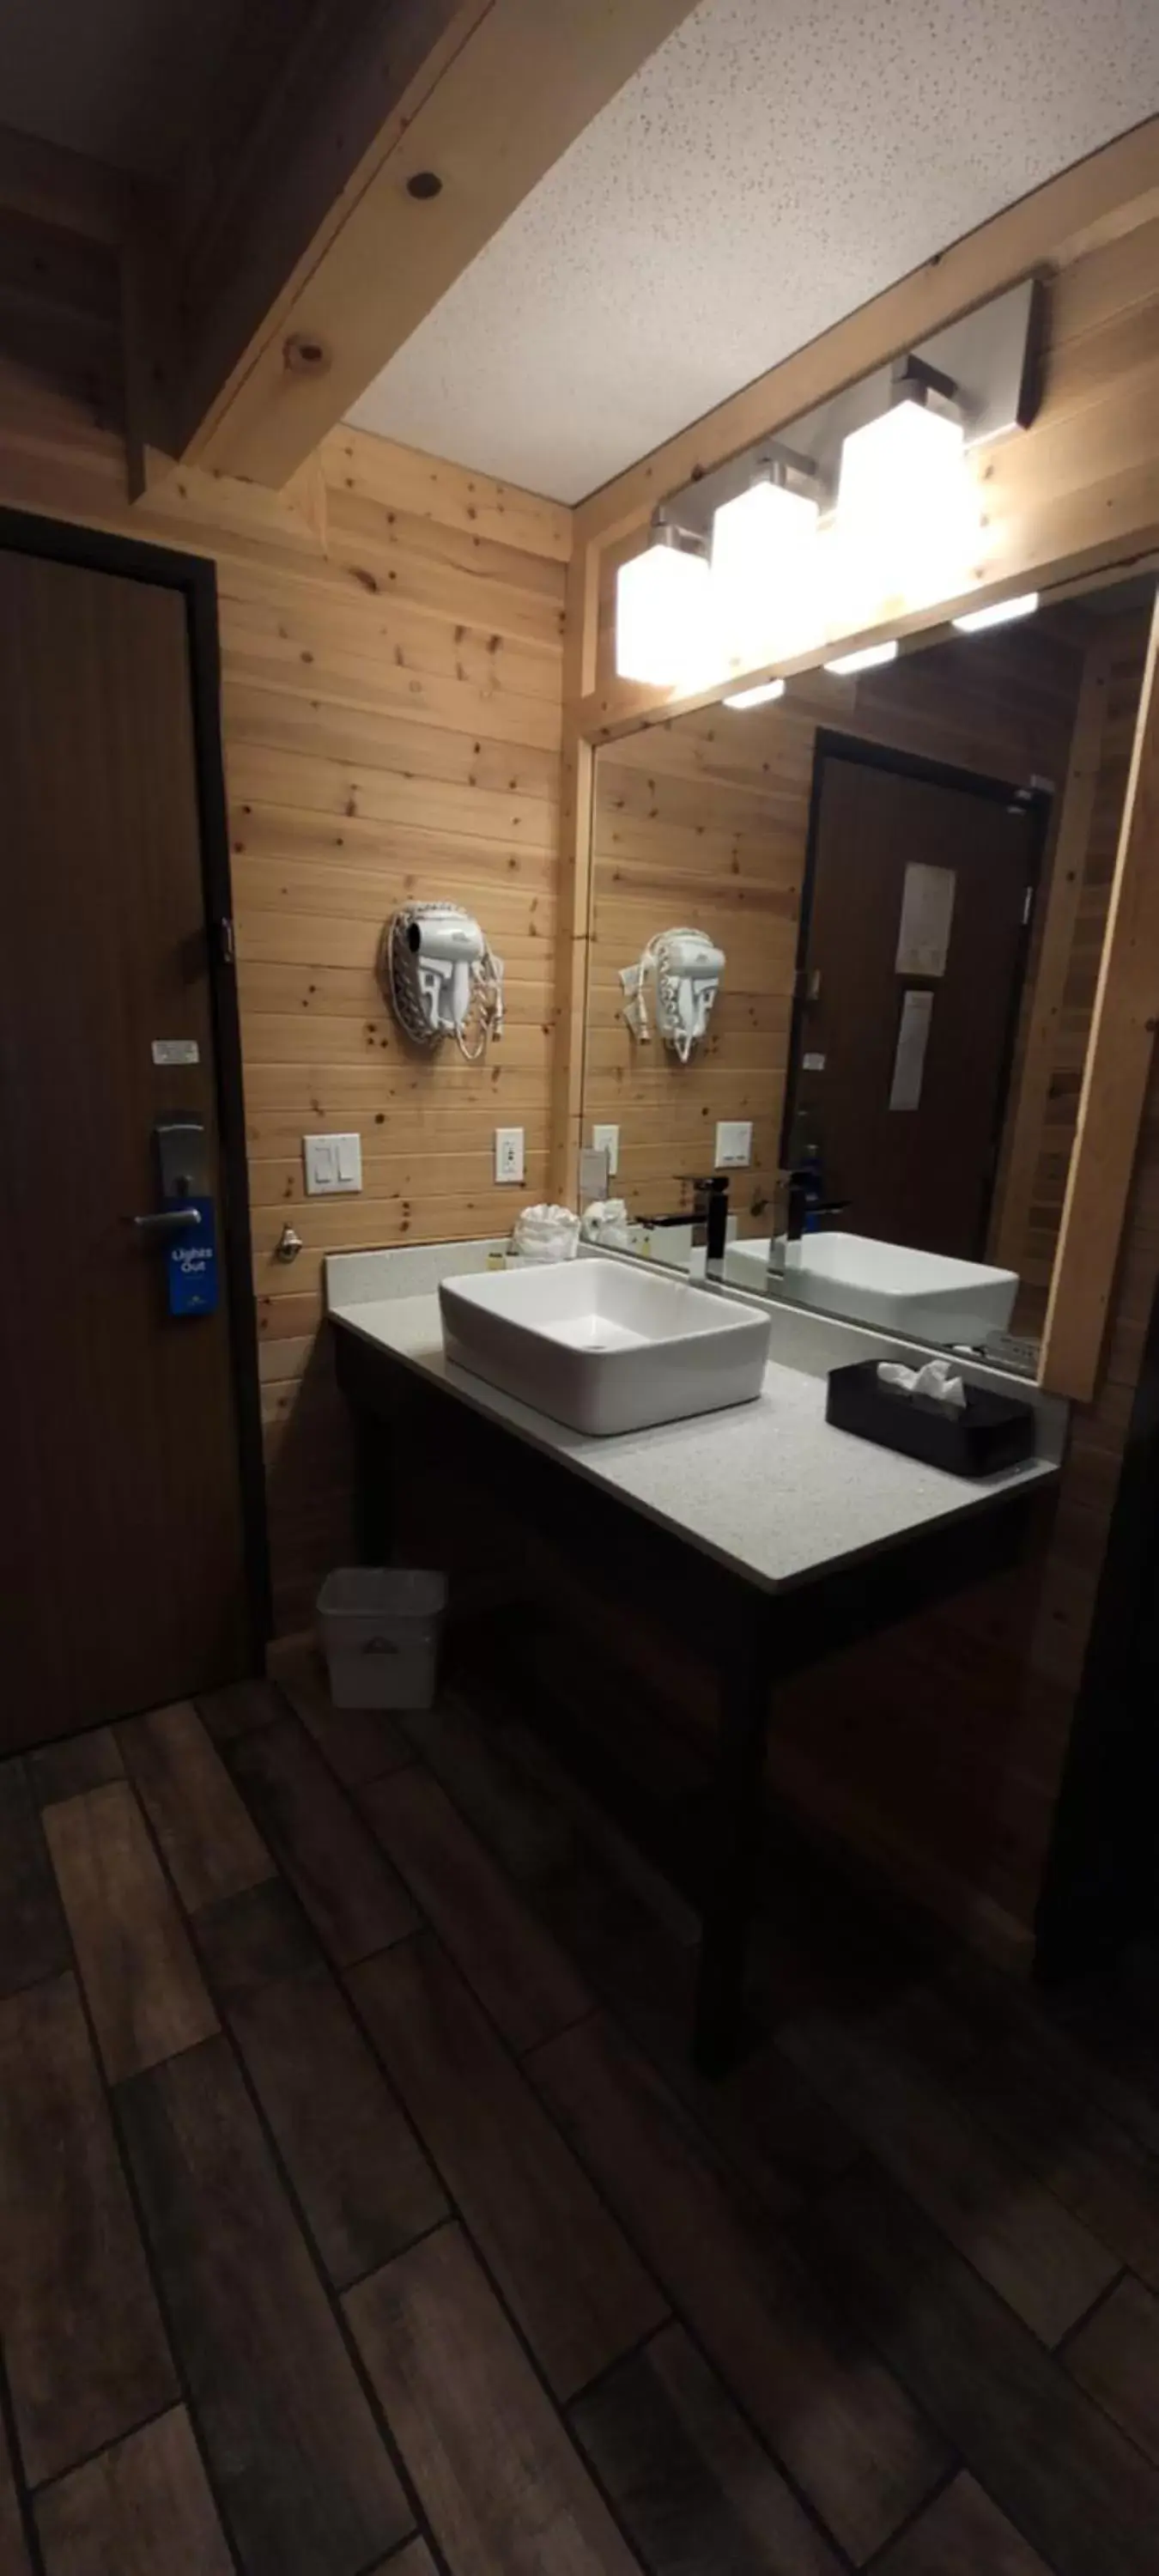 Bathroom in Days Inn by Wyndham Cadillac